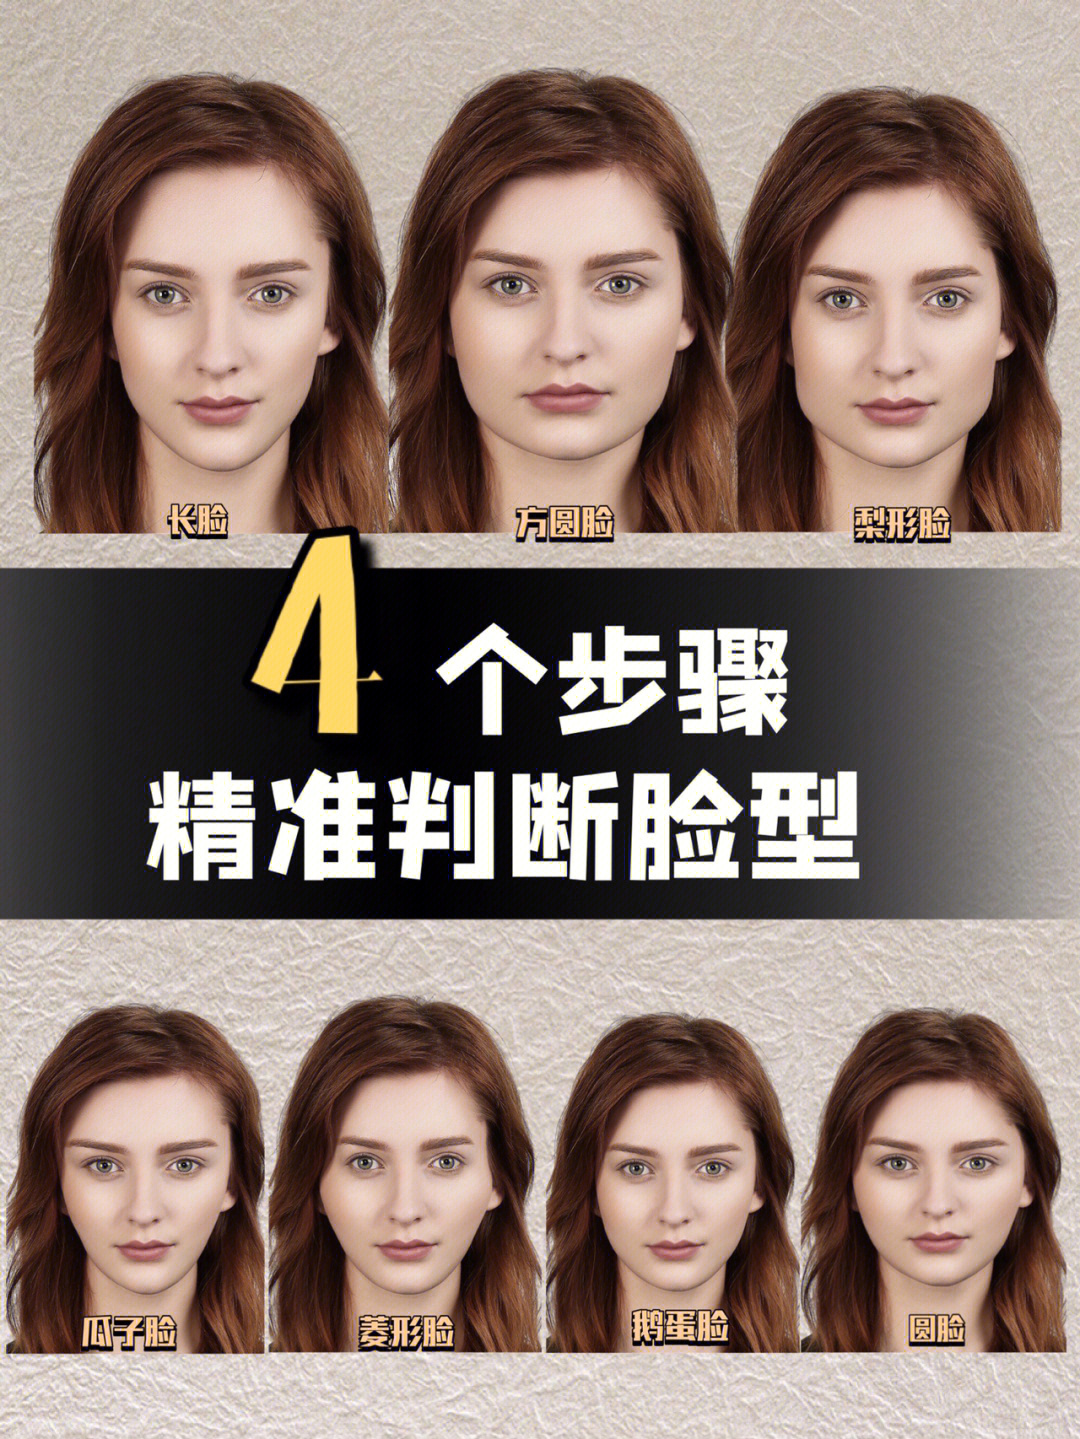 美学提升4个步骤精准判断脸型